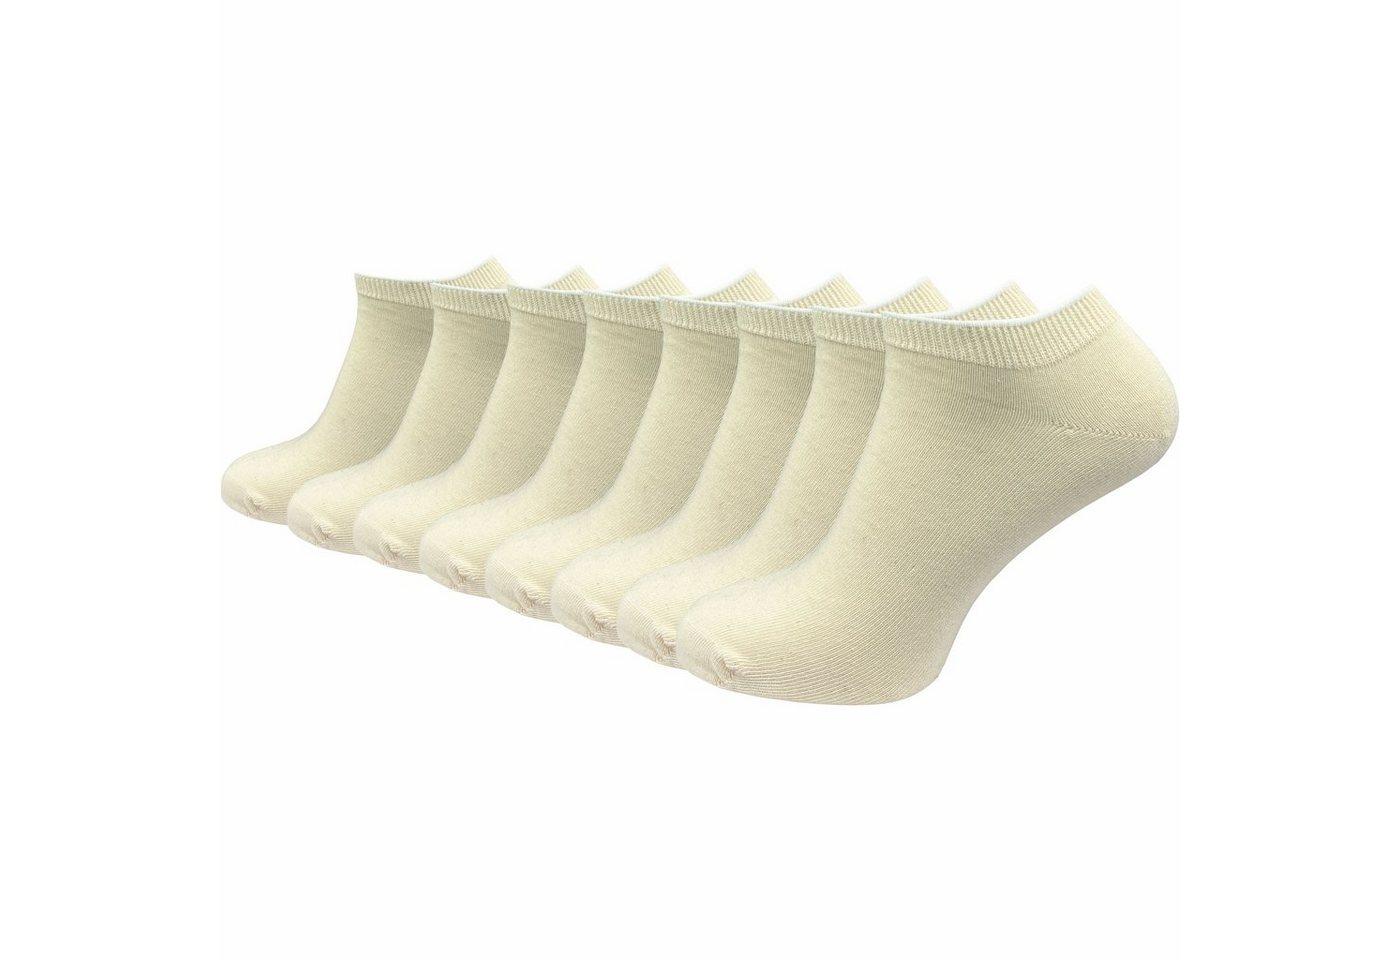 GAWILO Sneakersocken Natur" für Damen & Herren aus 100% Baumwolle u.a. in weiß & schwarz (8 Paar) ohne drückende Naht über den Zehen - Spitze handgekettelt" von GAWILO